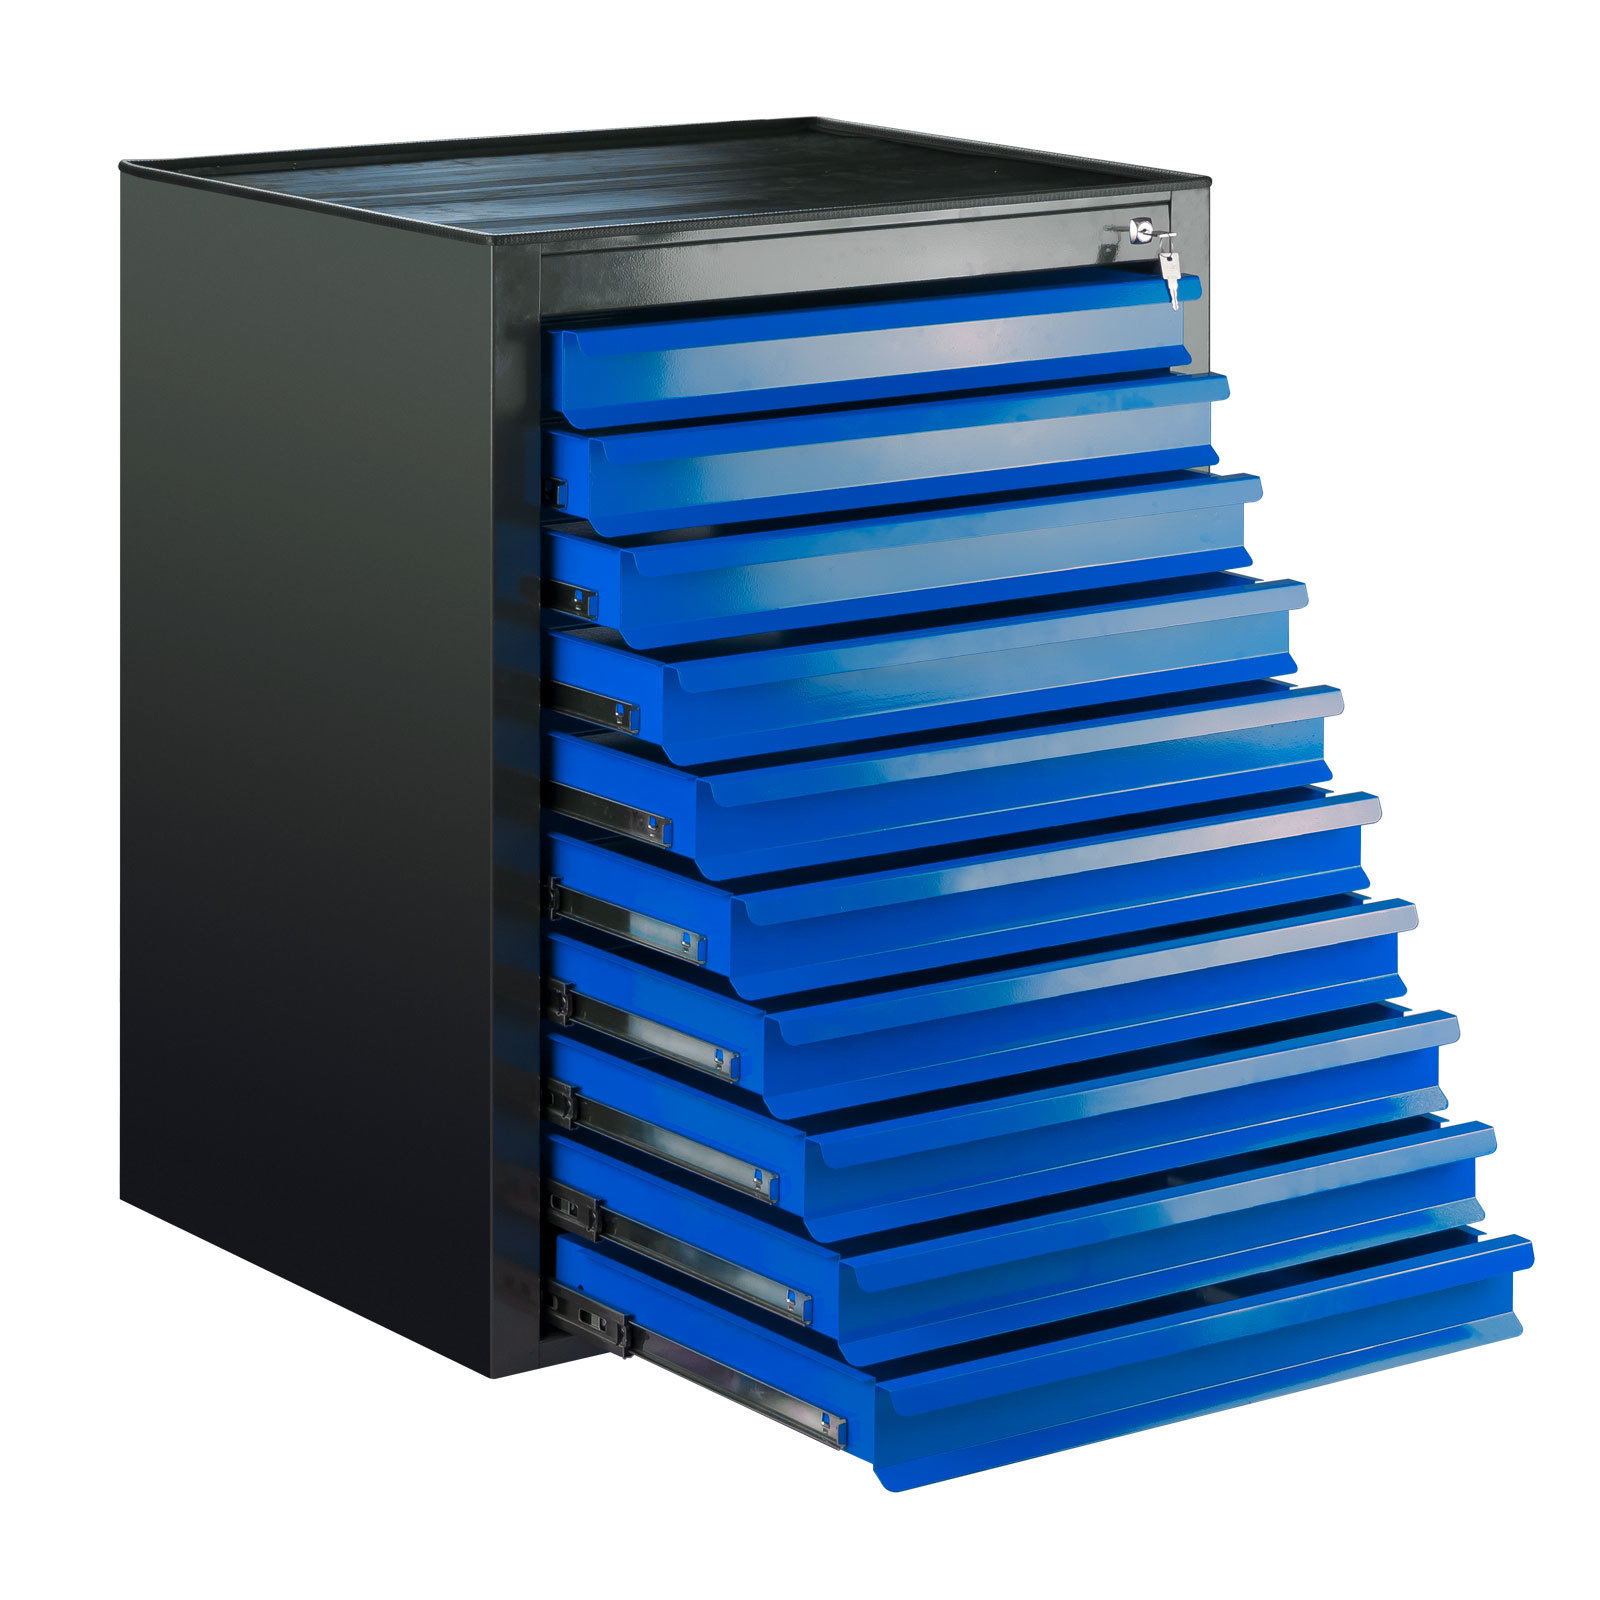 Schubladenschrank Kobra mit 10 Schubladen + Gummiauflage | HxBxT 90x71x55cm | Anthrazitgrau/Blau